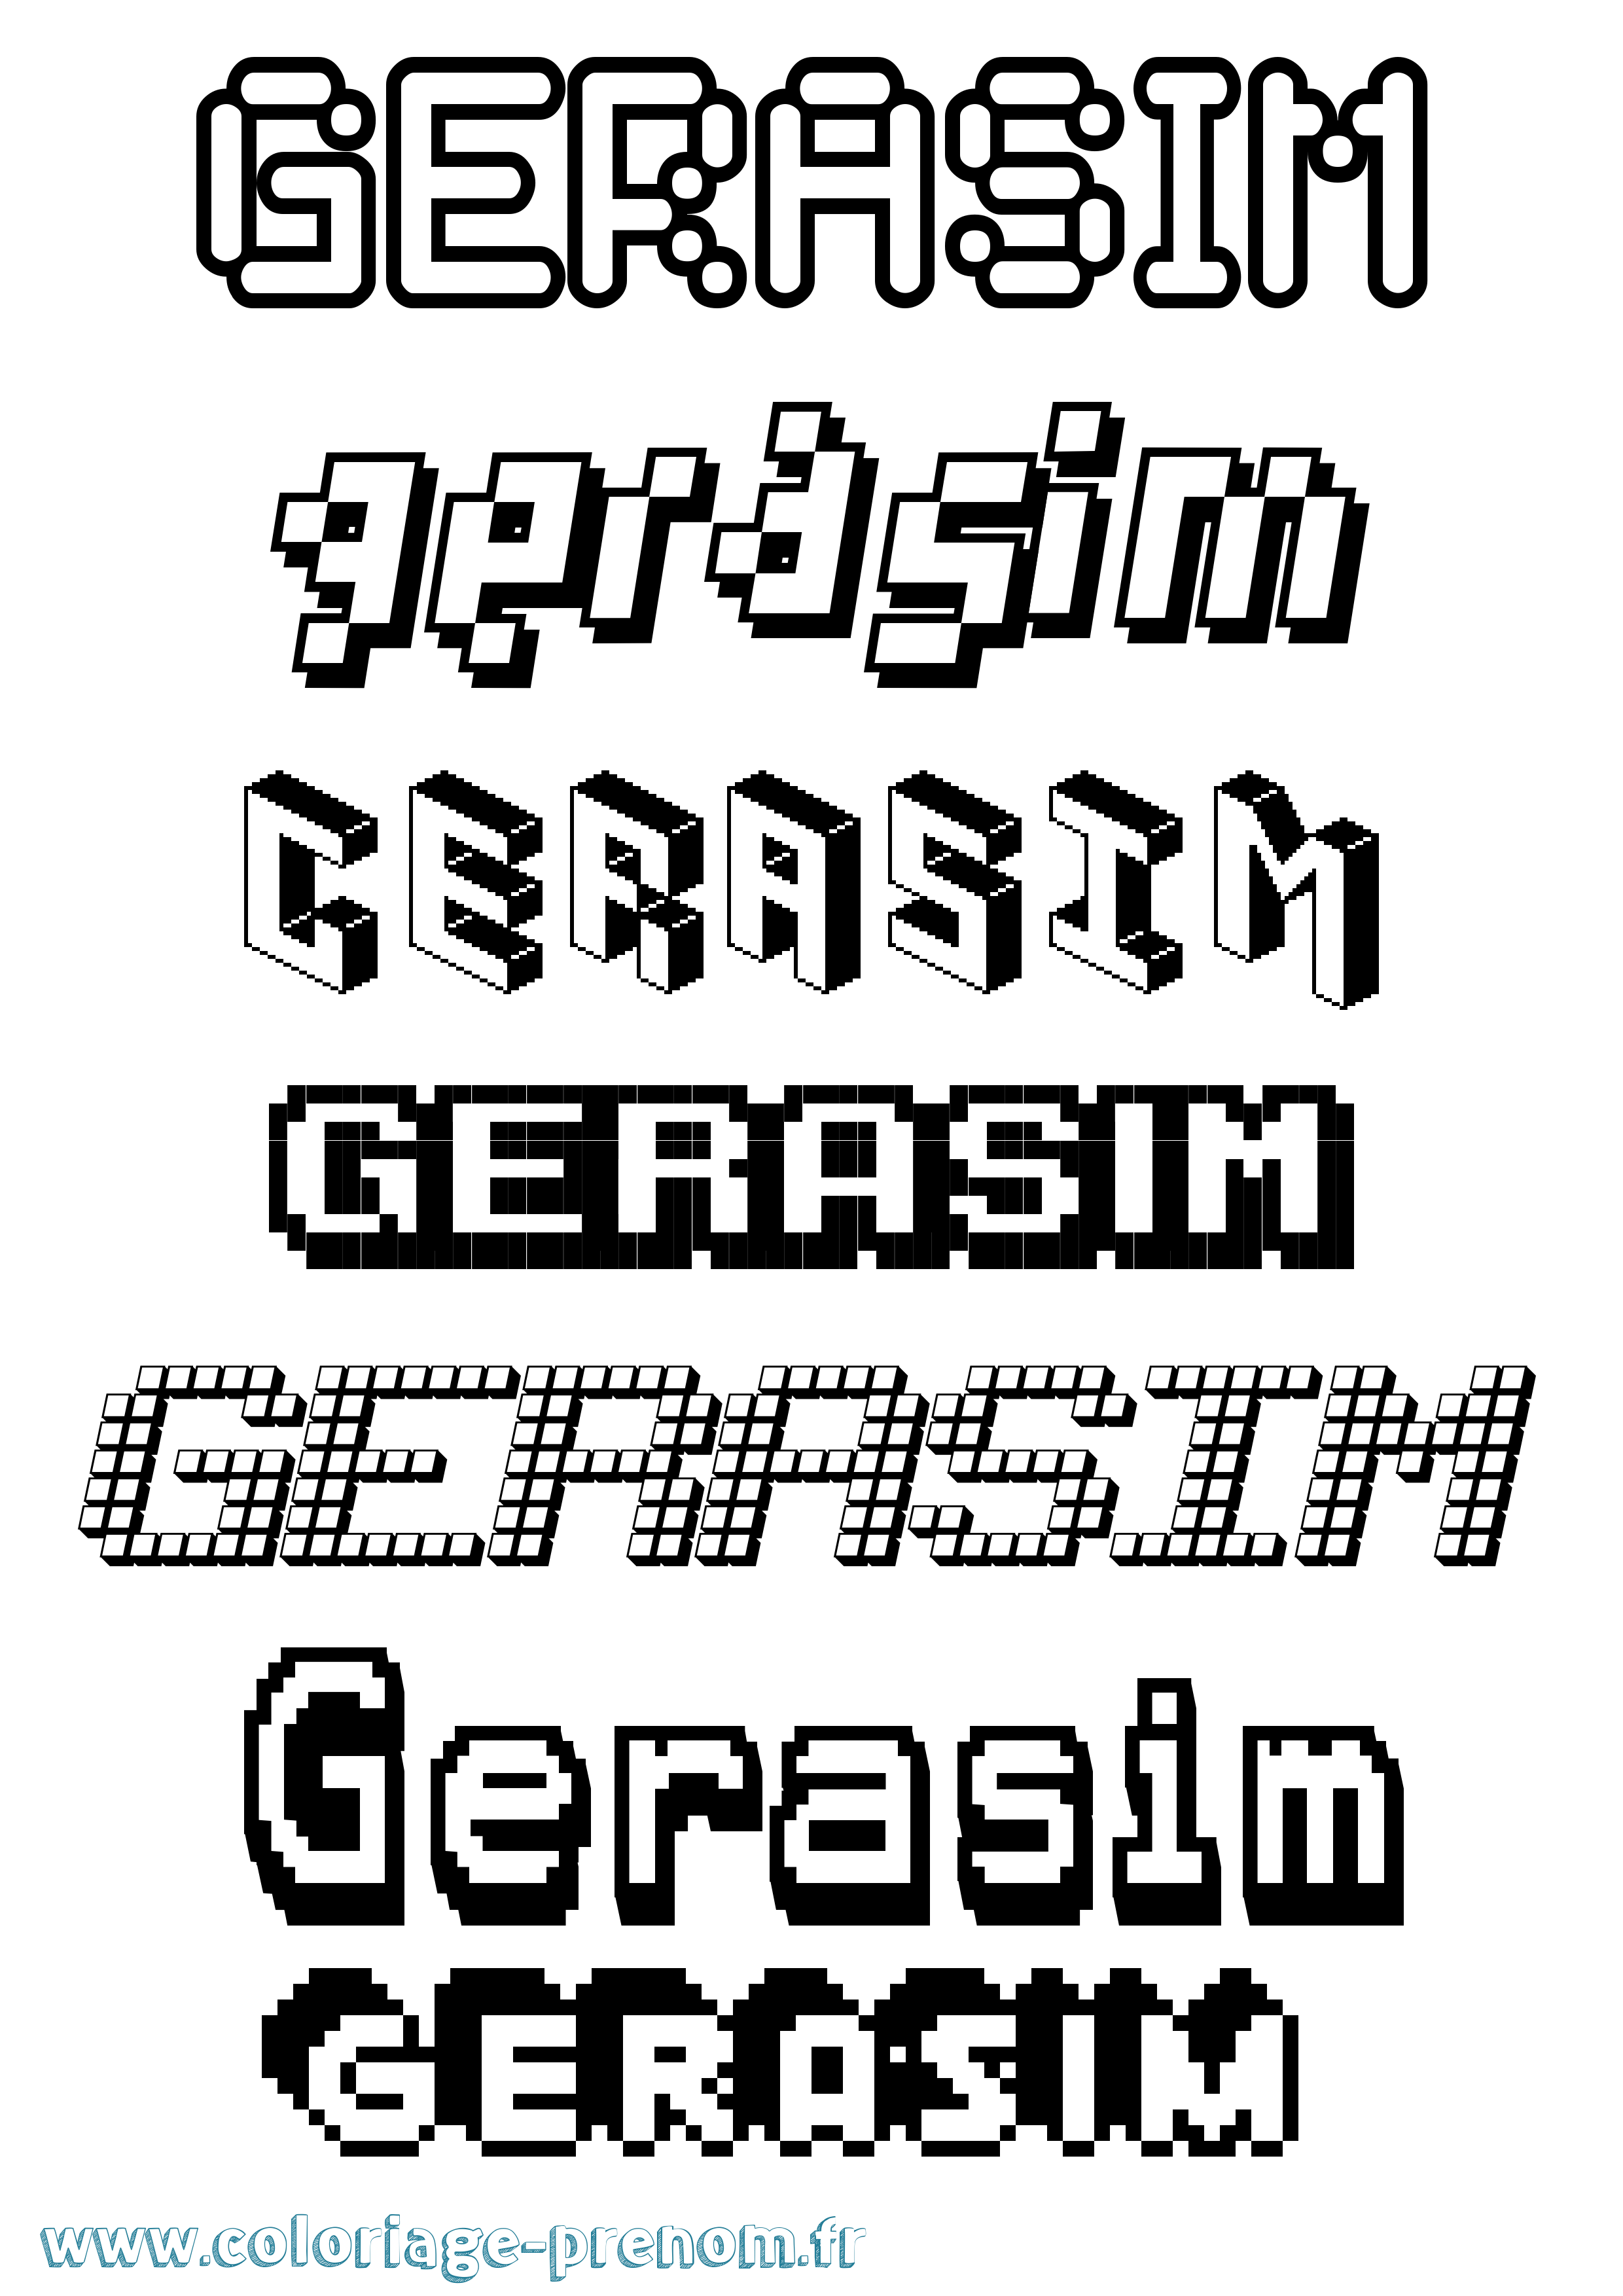 Coloriage prénom Gerasim Pixel